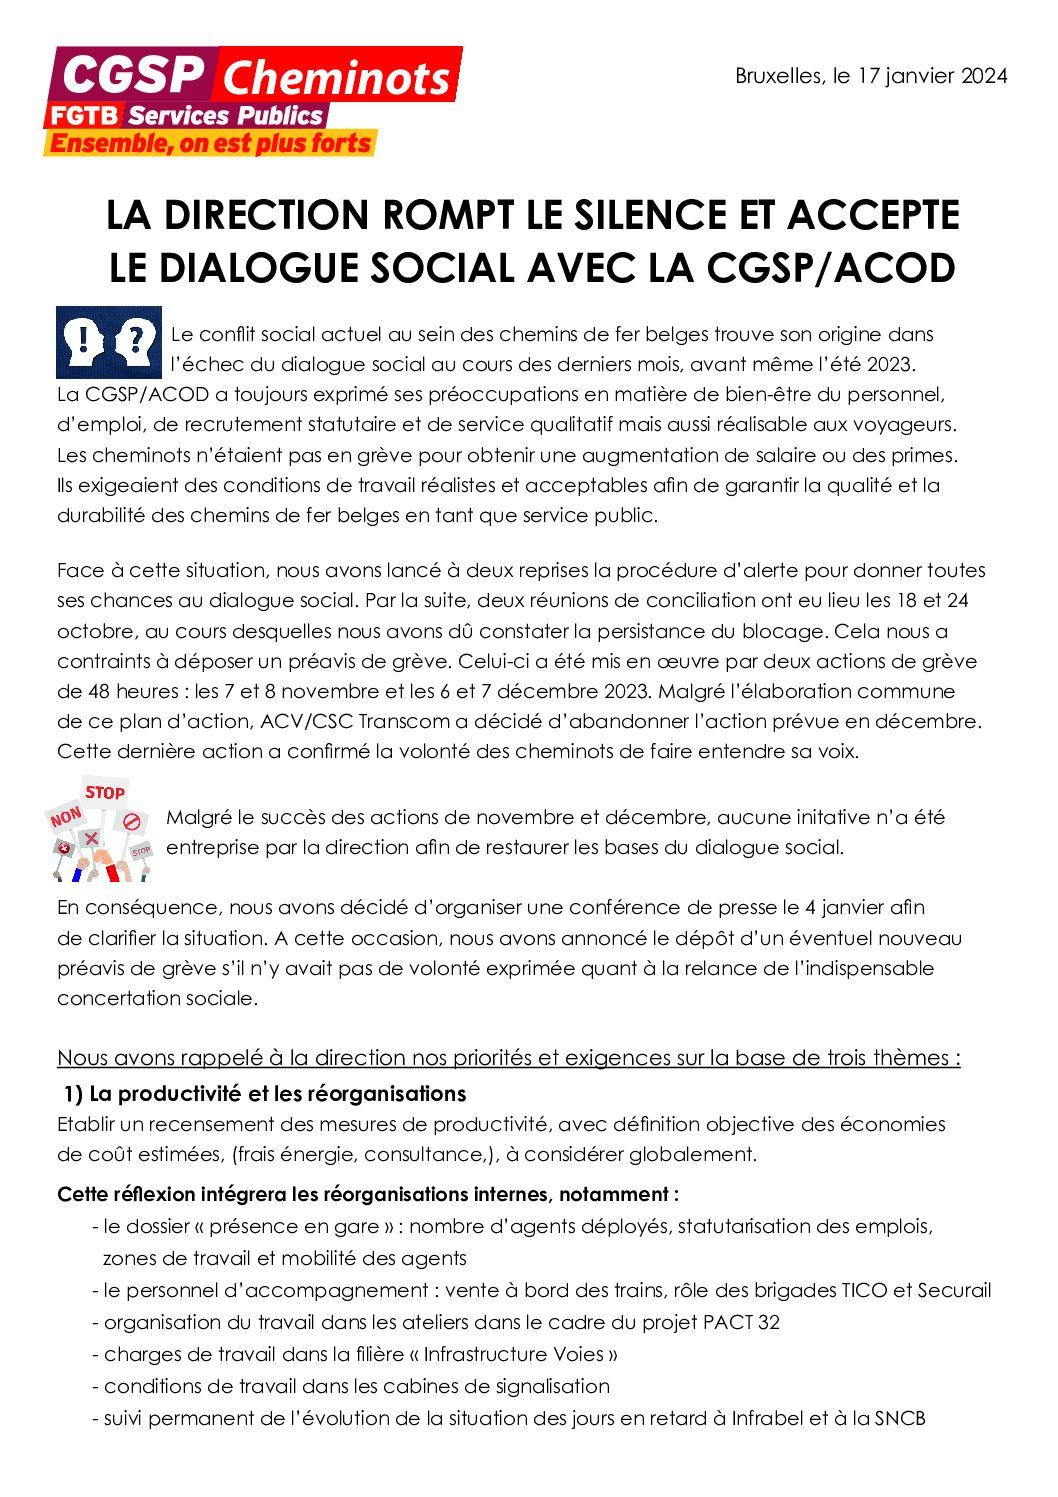 La direction rompt le silence et accepte le dialogue social avec la CGSP/ACOD